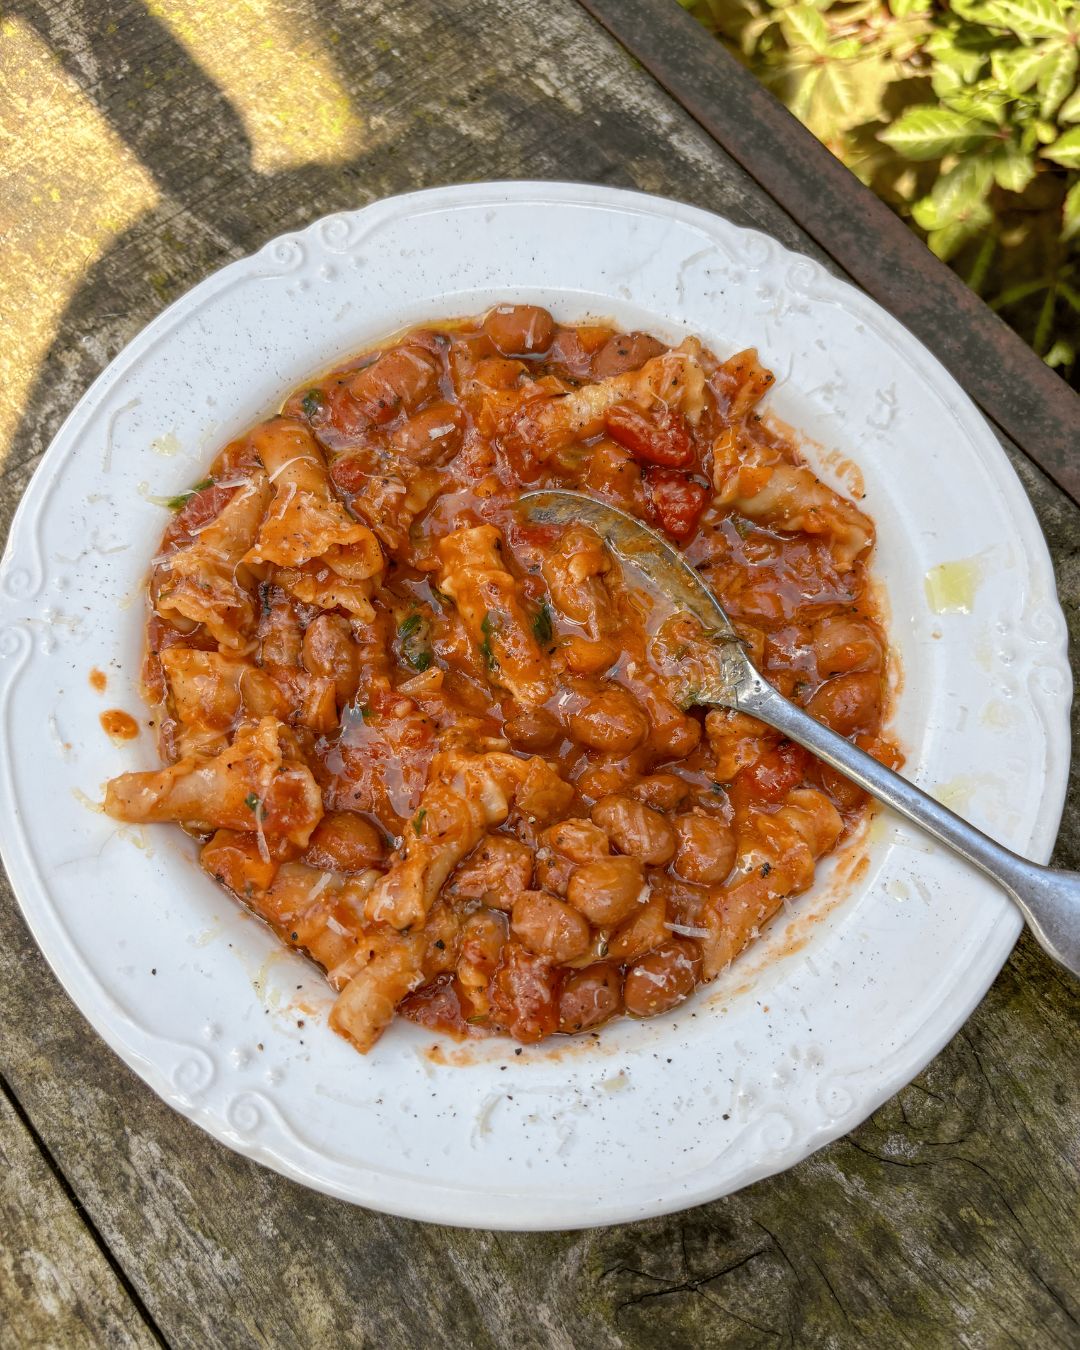 beans_recipe_pasta e fagioli_cannellini_haricot beans_beans_uk_pasta_cannellini beans_borlotti beans